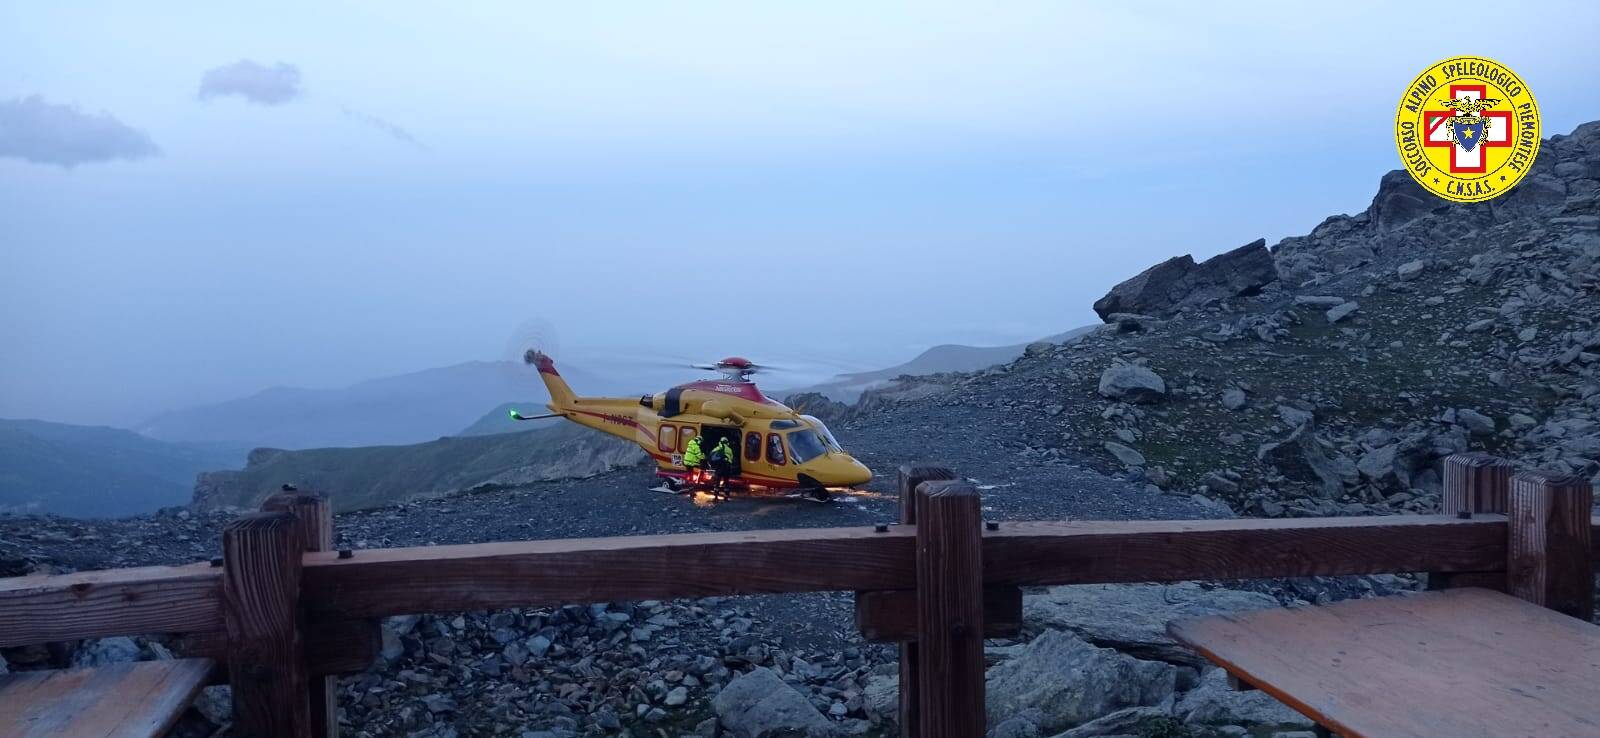 Primo soccorso dell’elicottero in notturna al Rifugio Quintino Sella